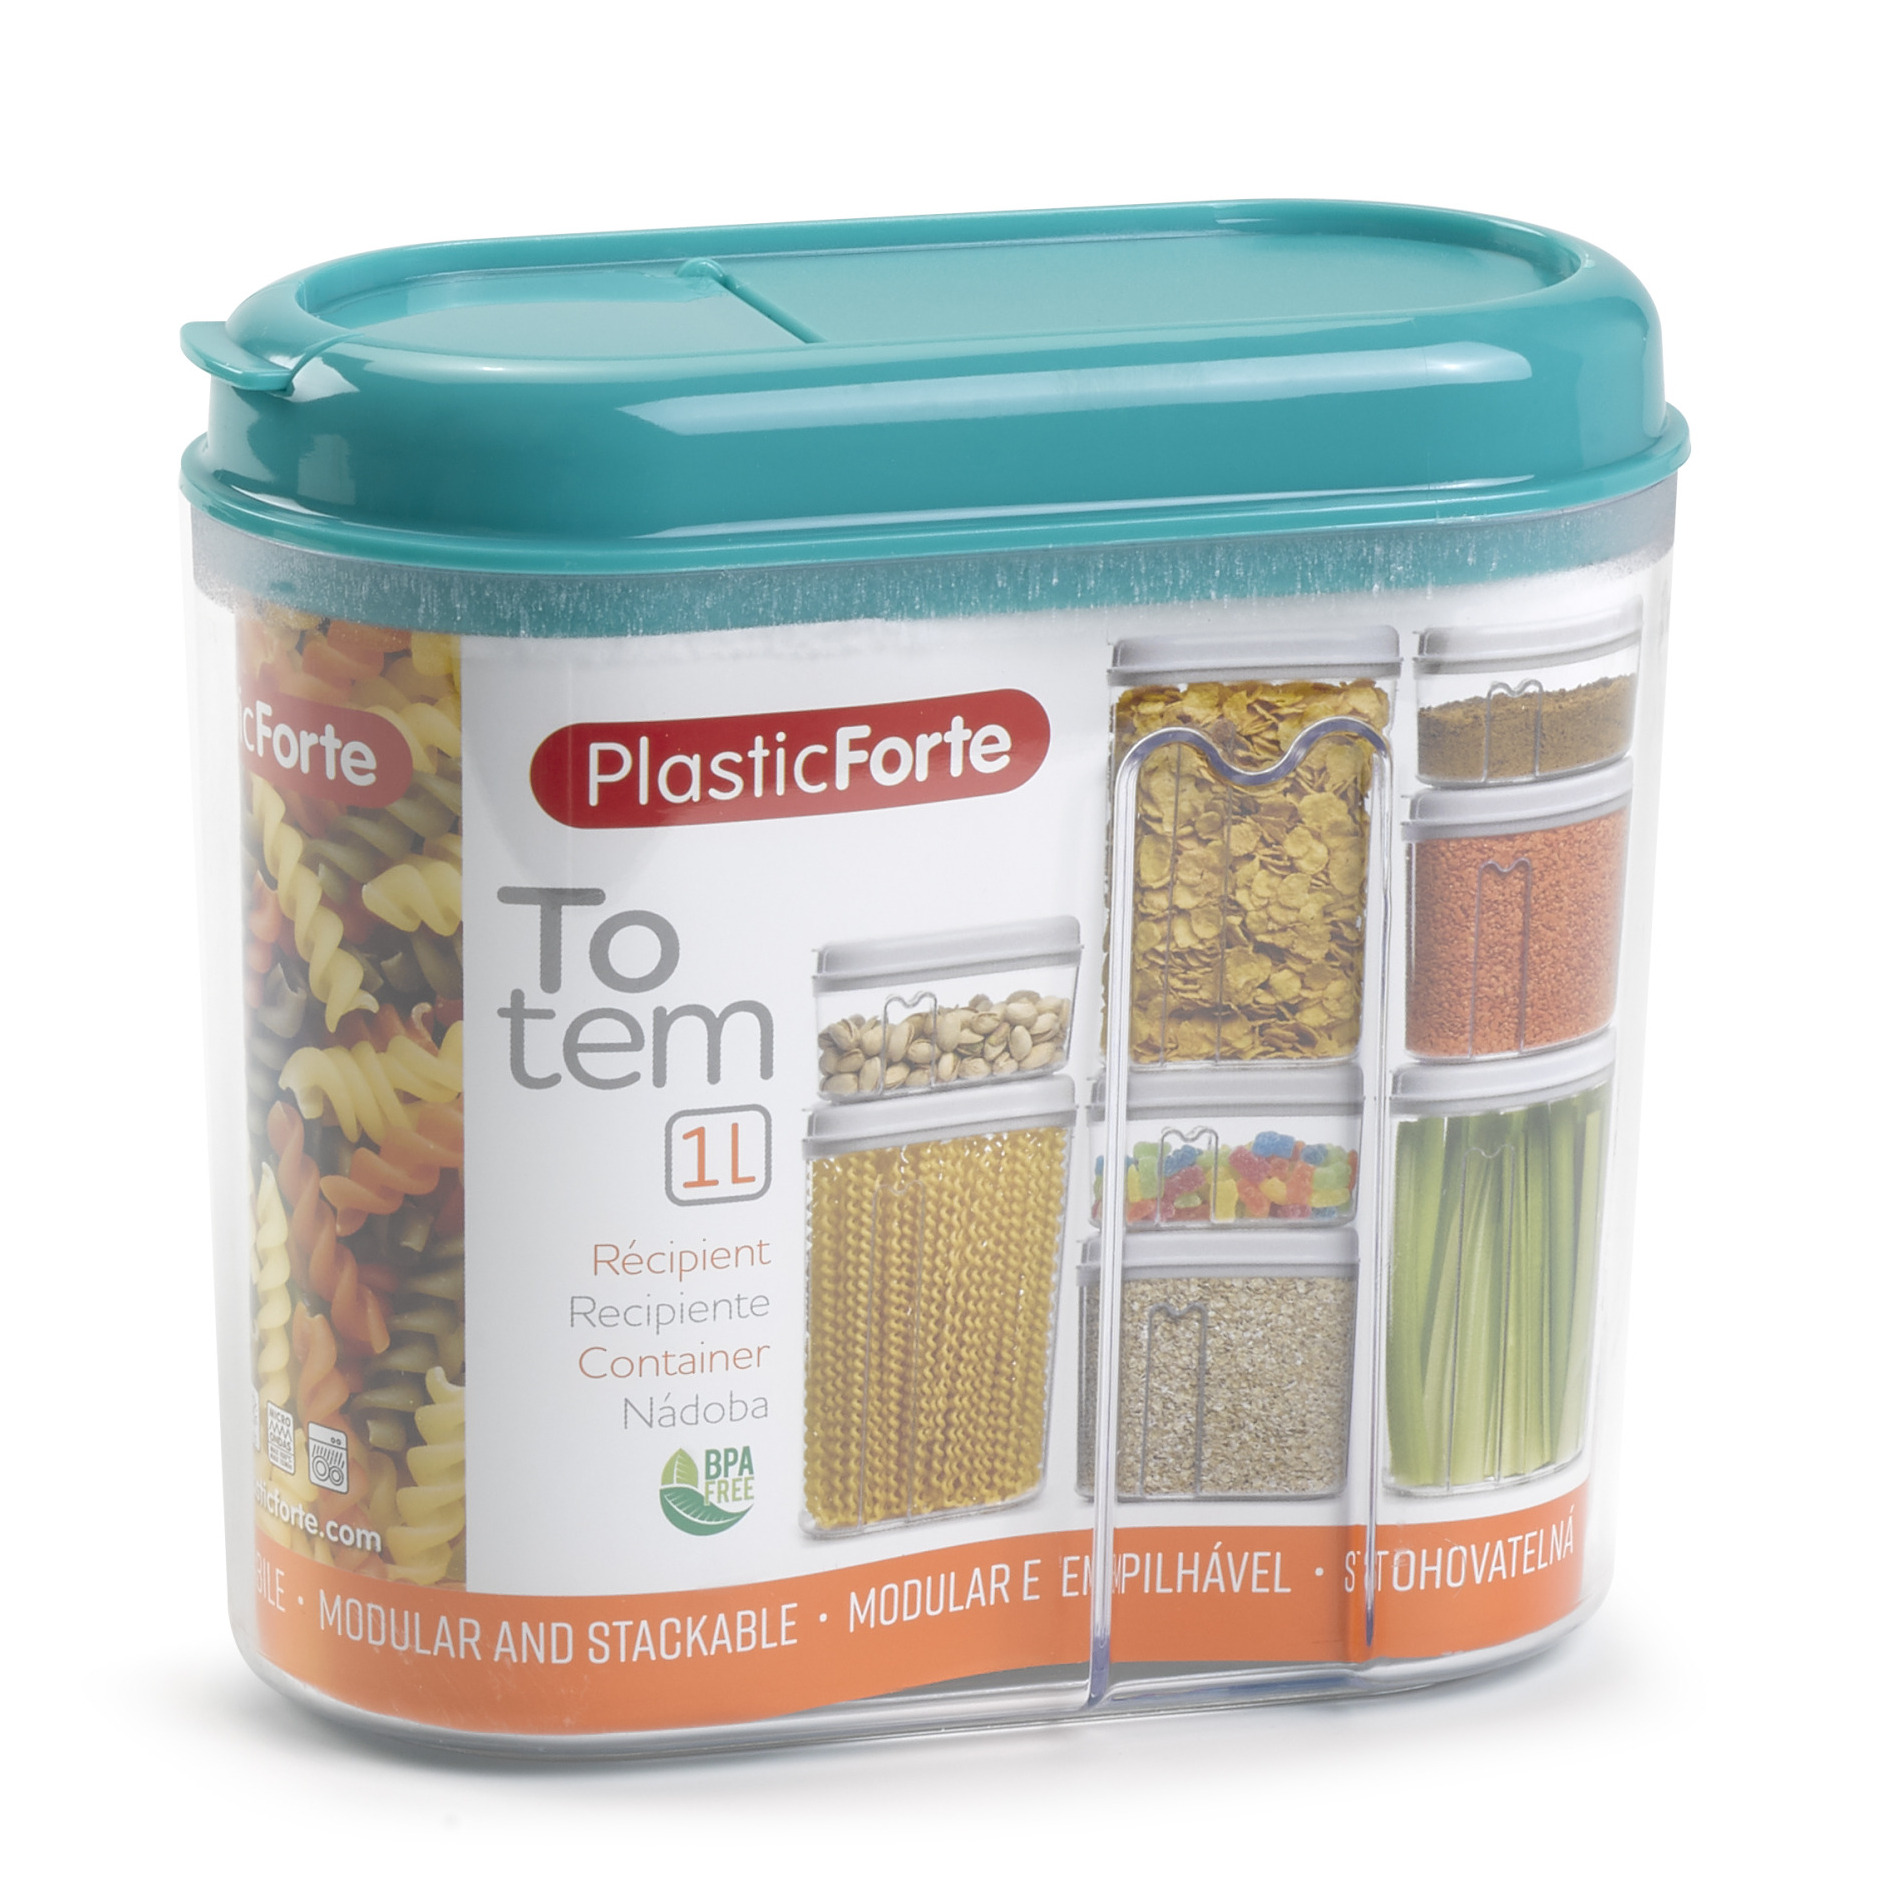 PlasticForte Voedselcontainer strooibus - blauw - 1000 ml - kunststof - 15 x 8 x 14 cm - voorraadpot -